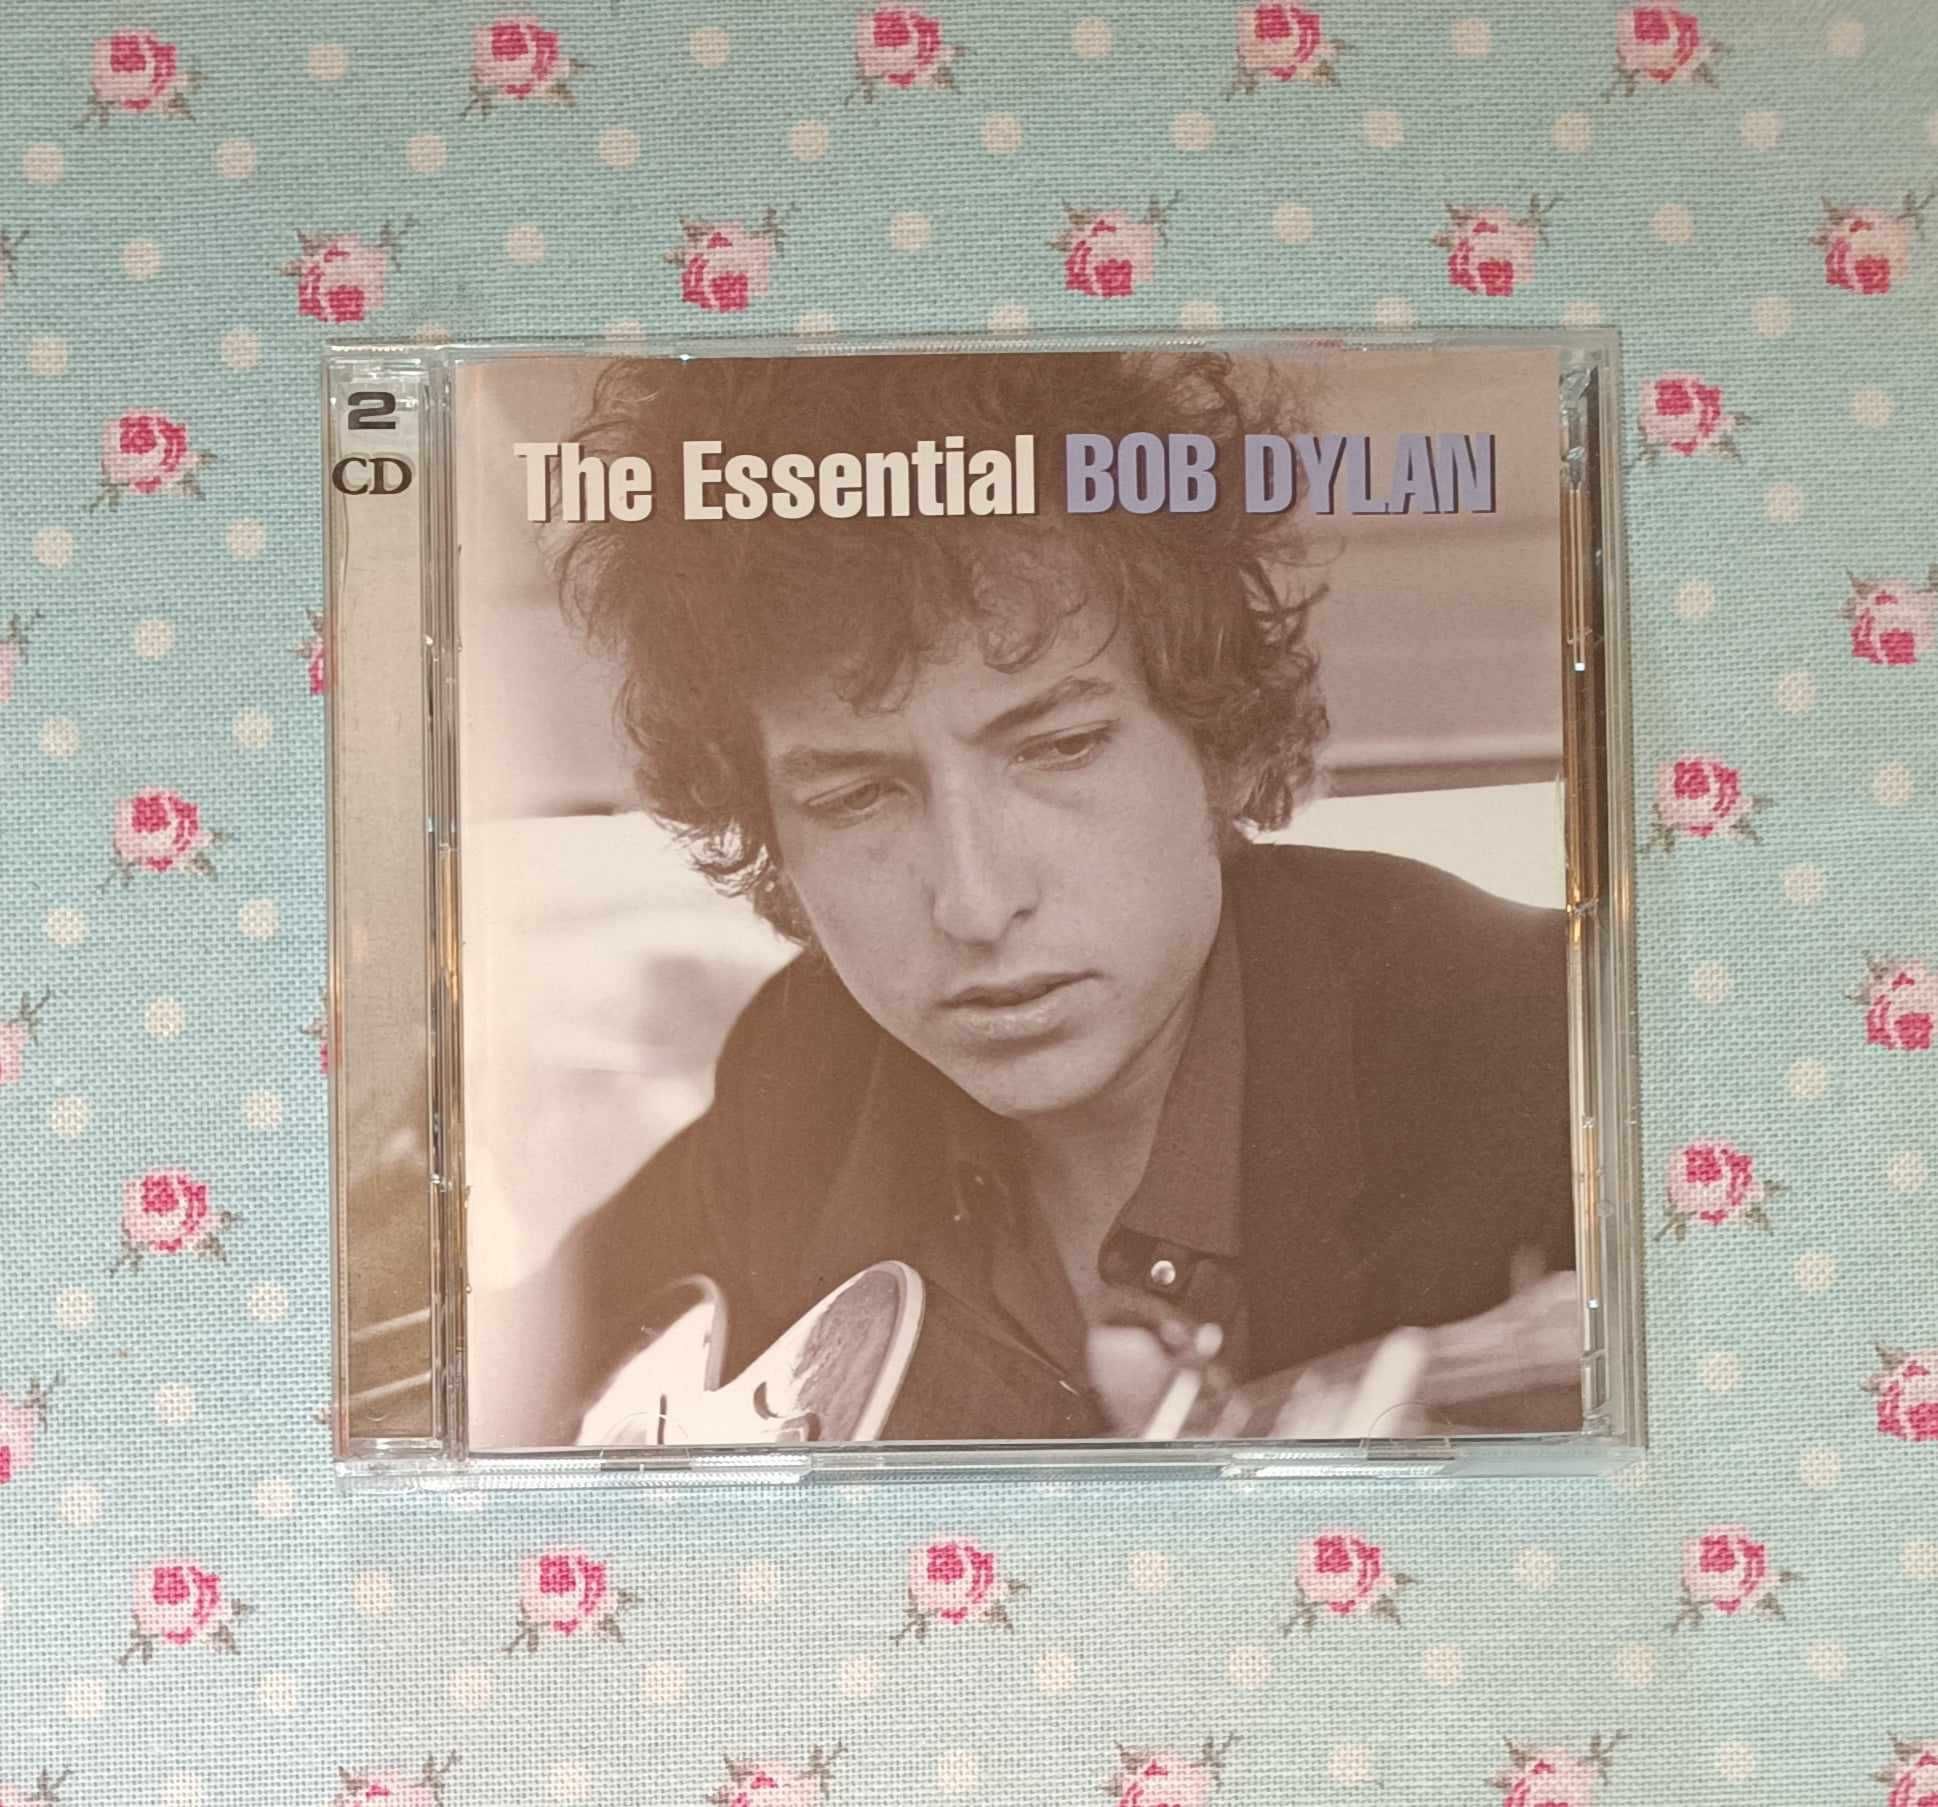 2 CDs do Bob Dylan